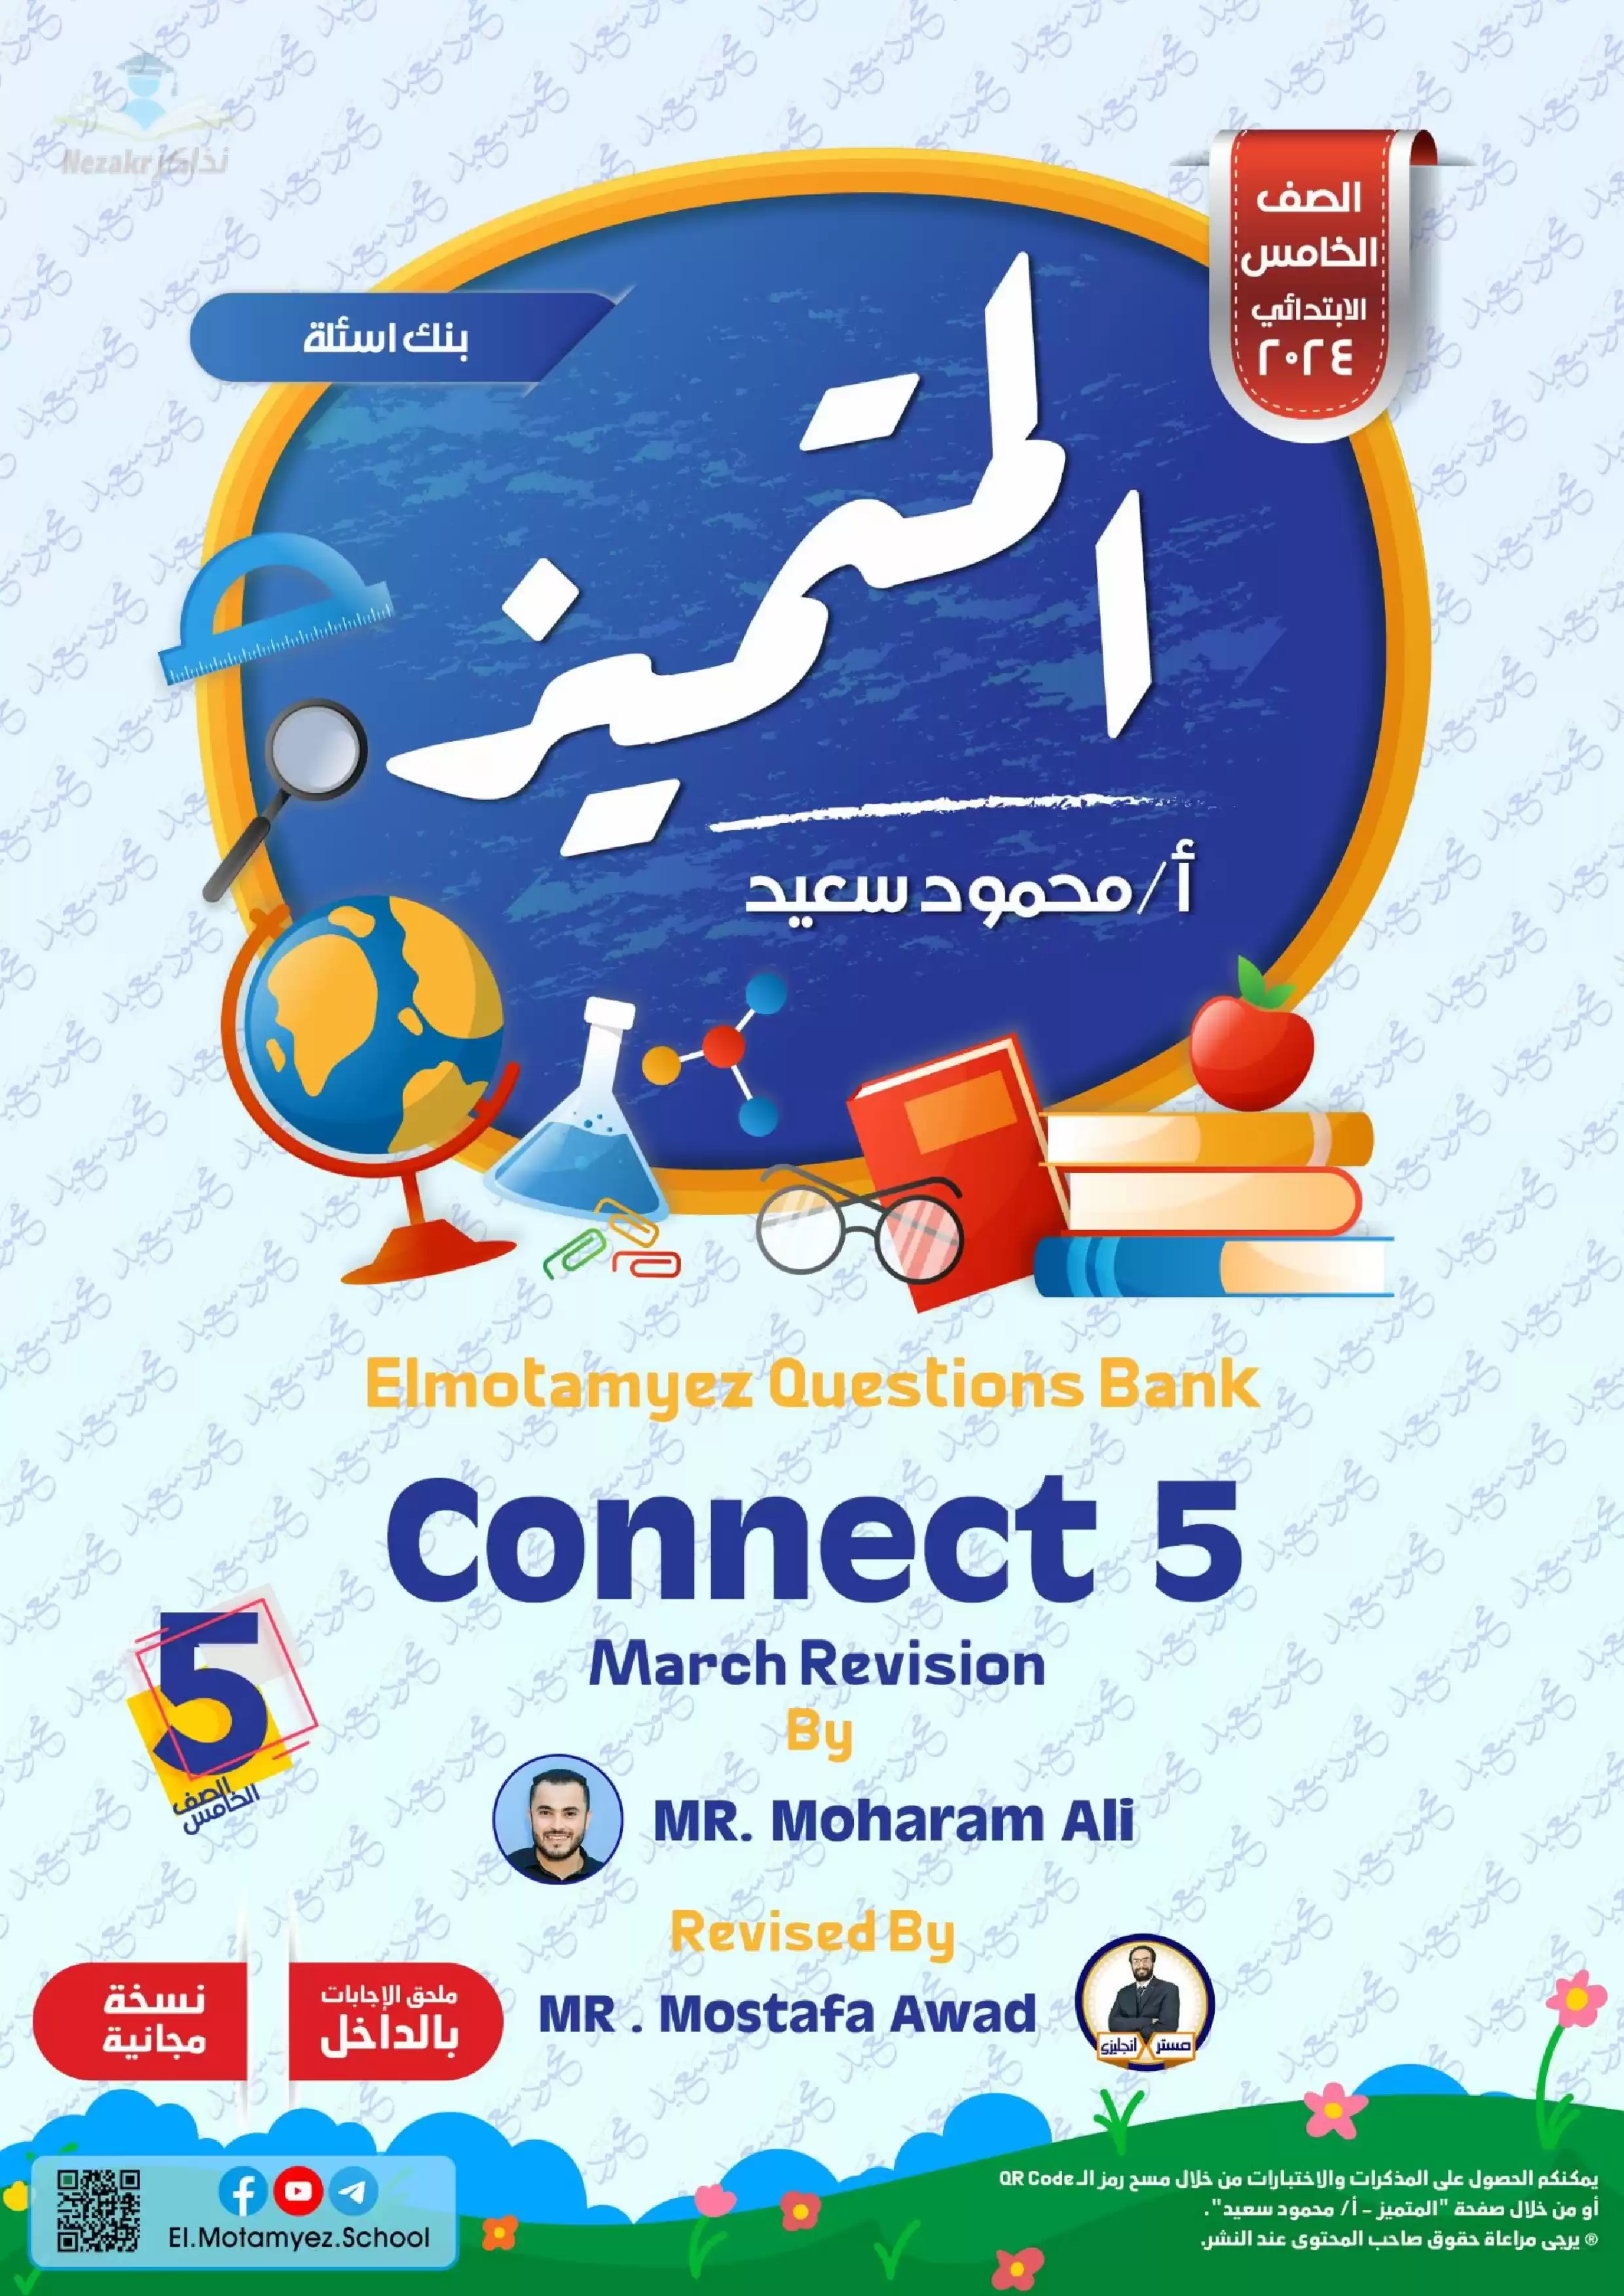 تحميل بنك أسئلة كتاب المتميز في اللغة الإنجليزية Connect 5 لشهر مارس للصف الخامس الابتدائي مع إجاباته النموذجية